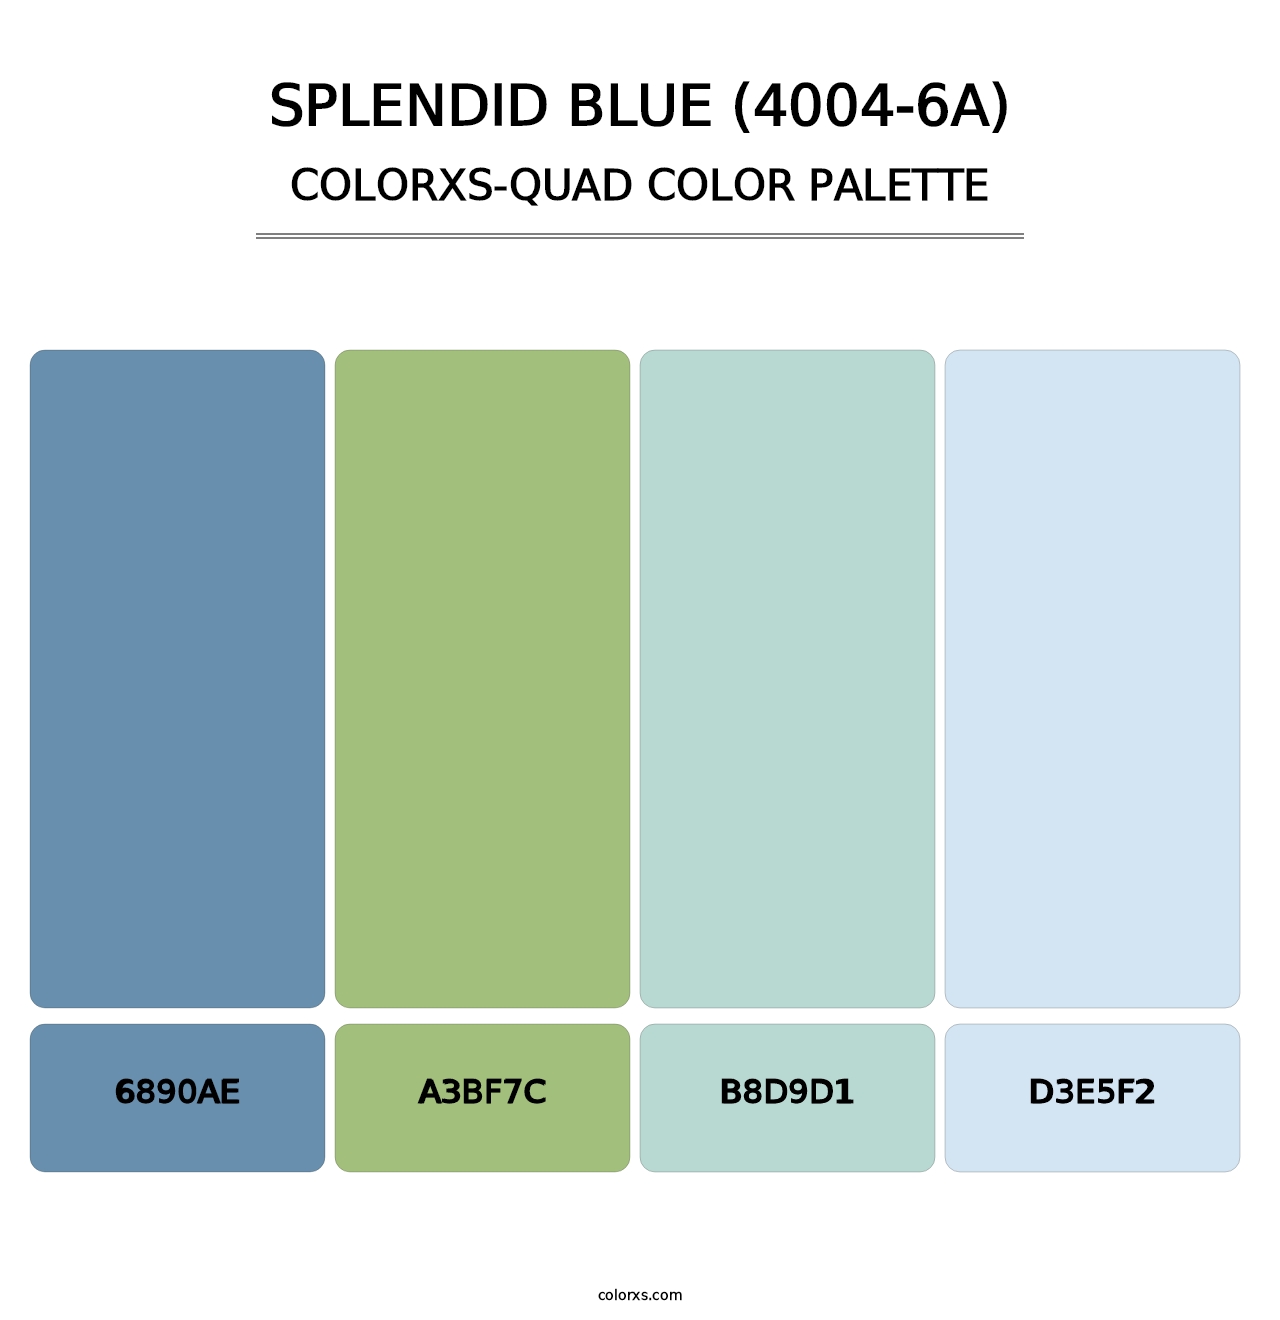 Splendid Blue (4004-6A) - Colorxs Quad Palette